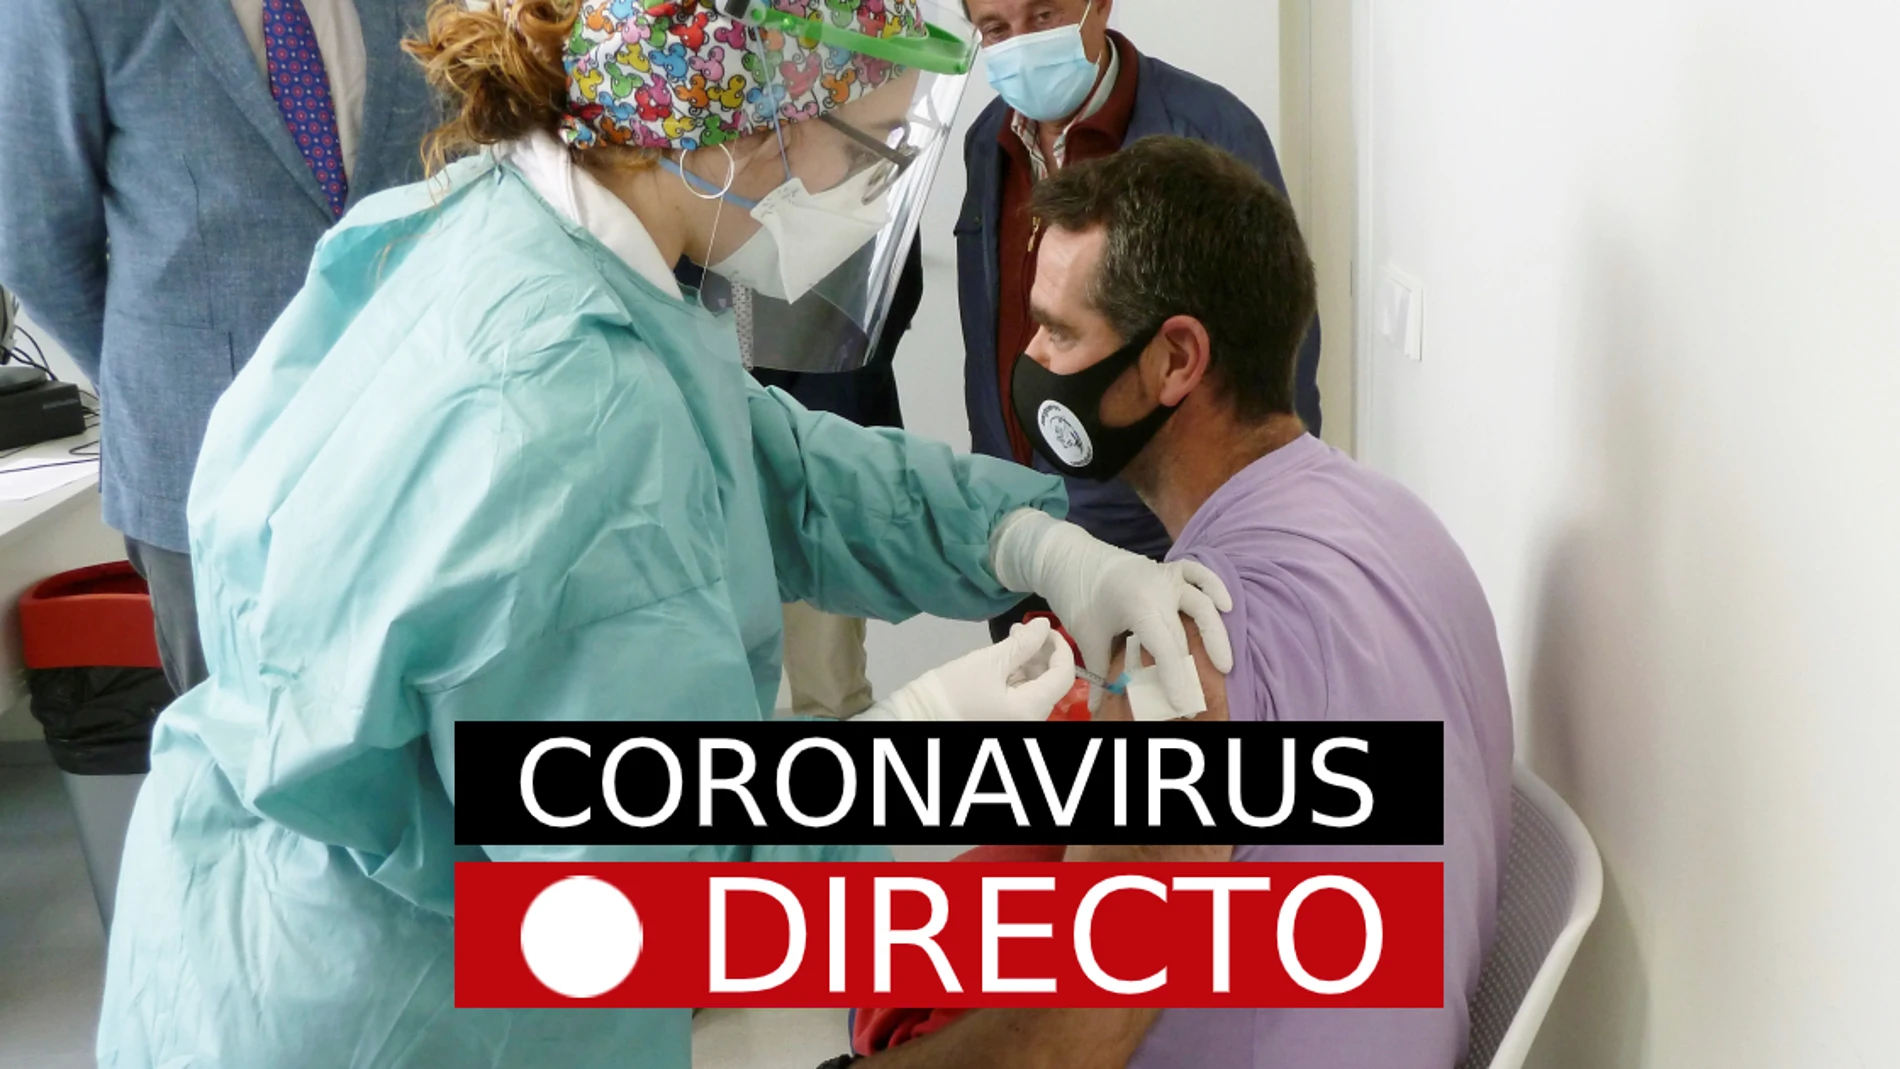 La última hora de la pandemia de coronavirus, en directo en laSexta.com